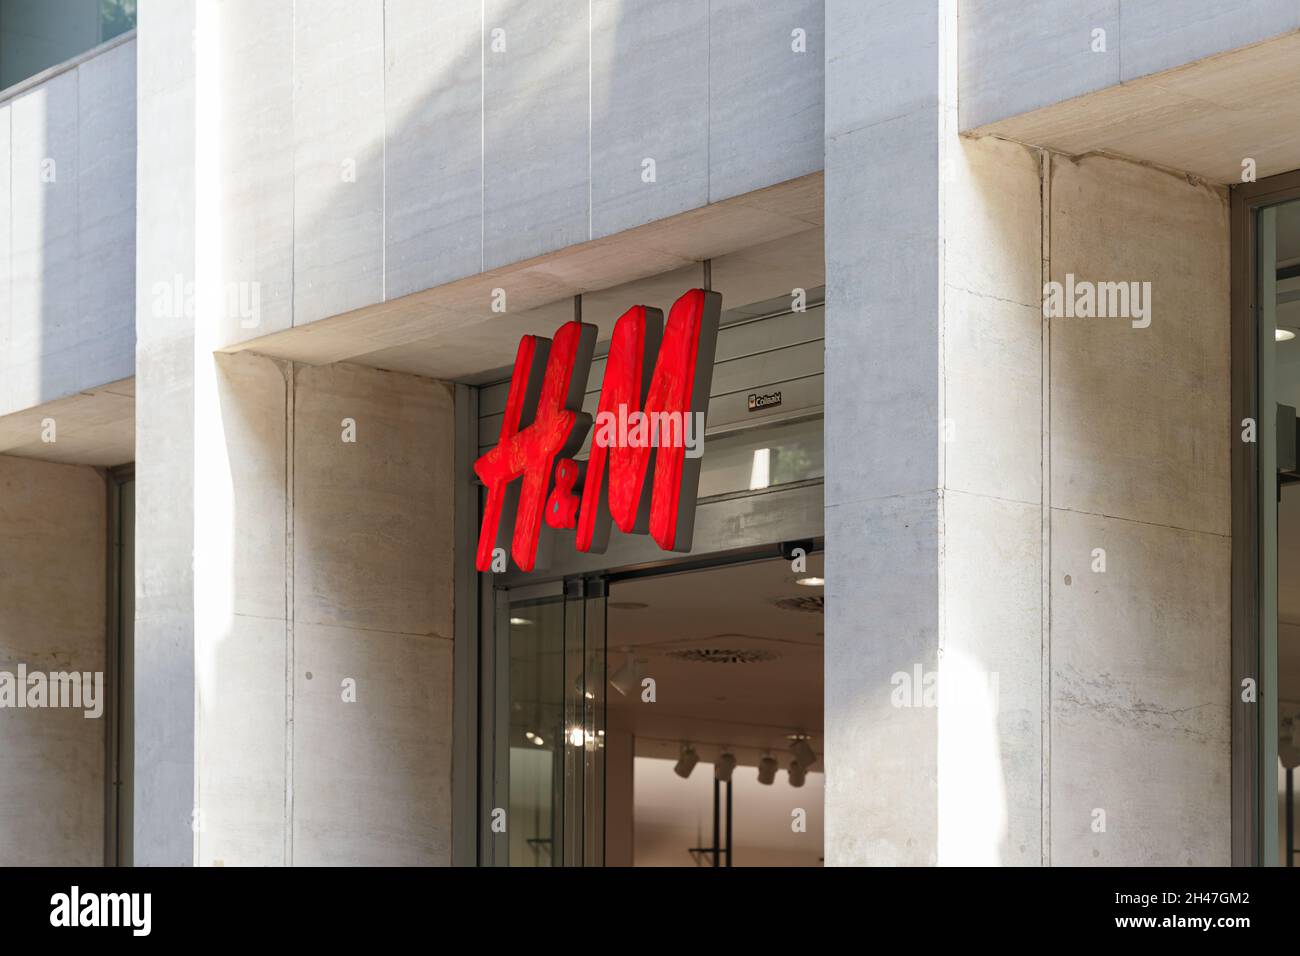 Hm shop Banque de photographies et d'images à haute résolution - Alamy